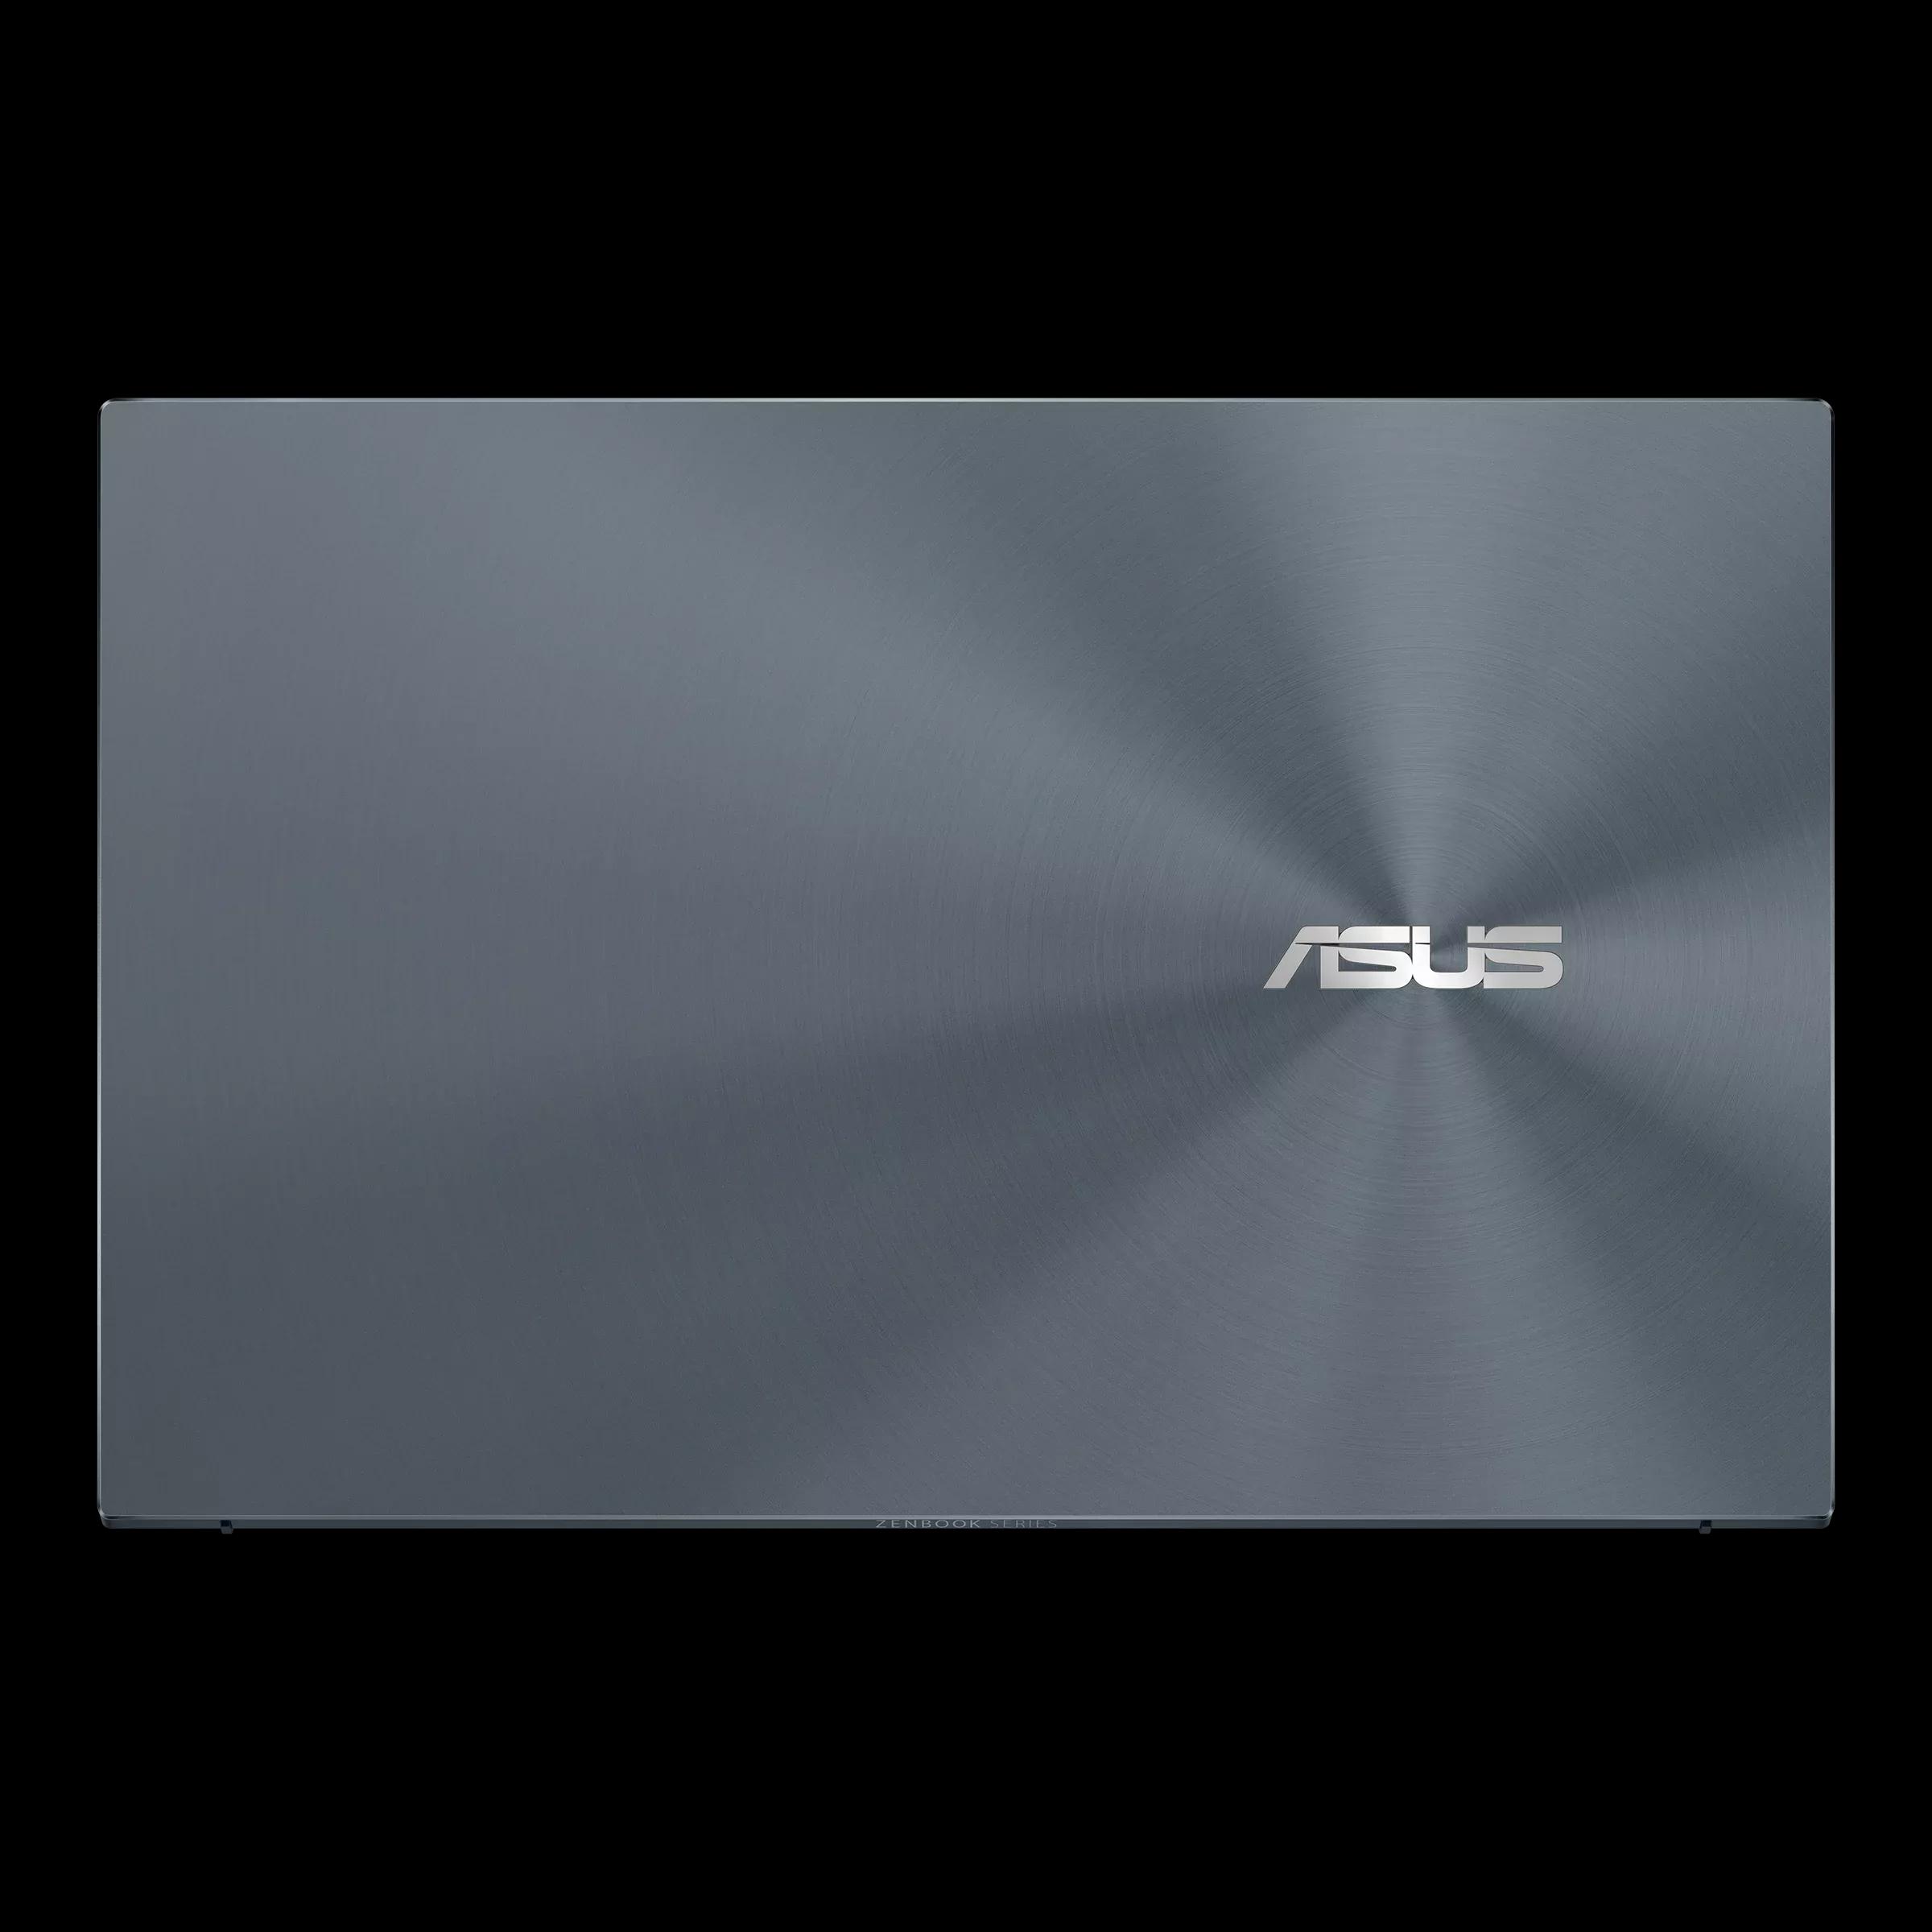 Asus ZenBook 14 UX425EA I7 11th Gen / 16GB RAM / 512GB SSD / Magic NumPad / 14" FHD display